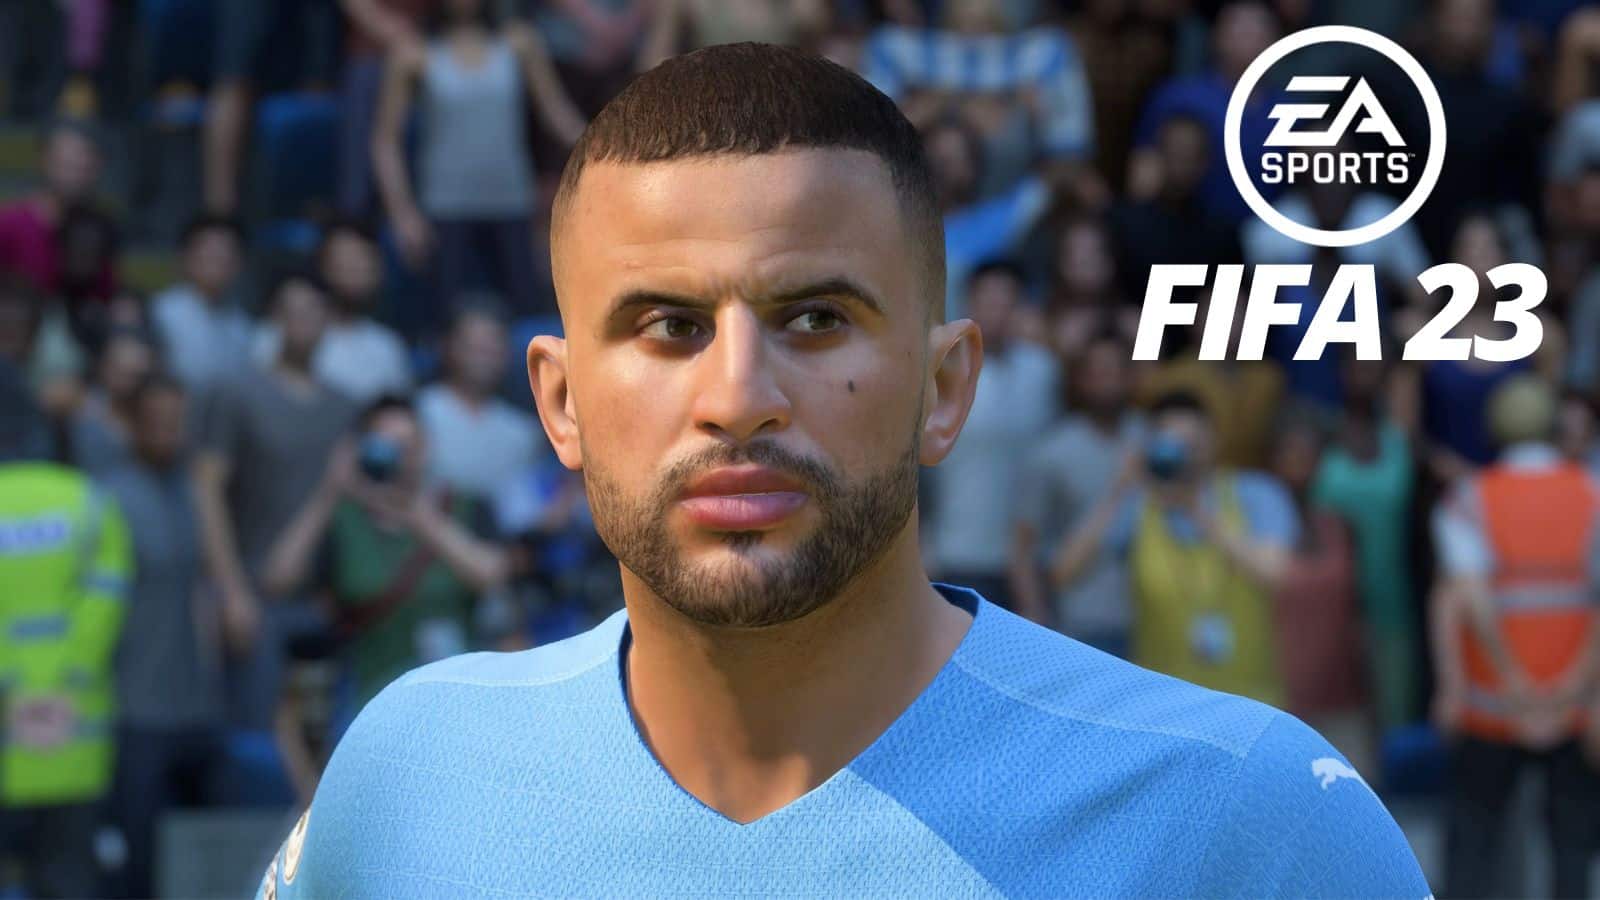 FIFA 23 revela três novos Ícones